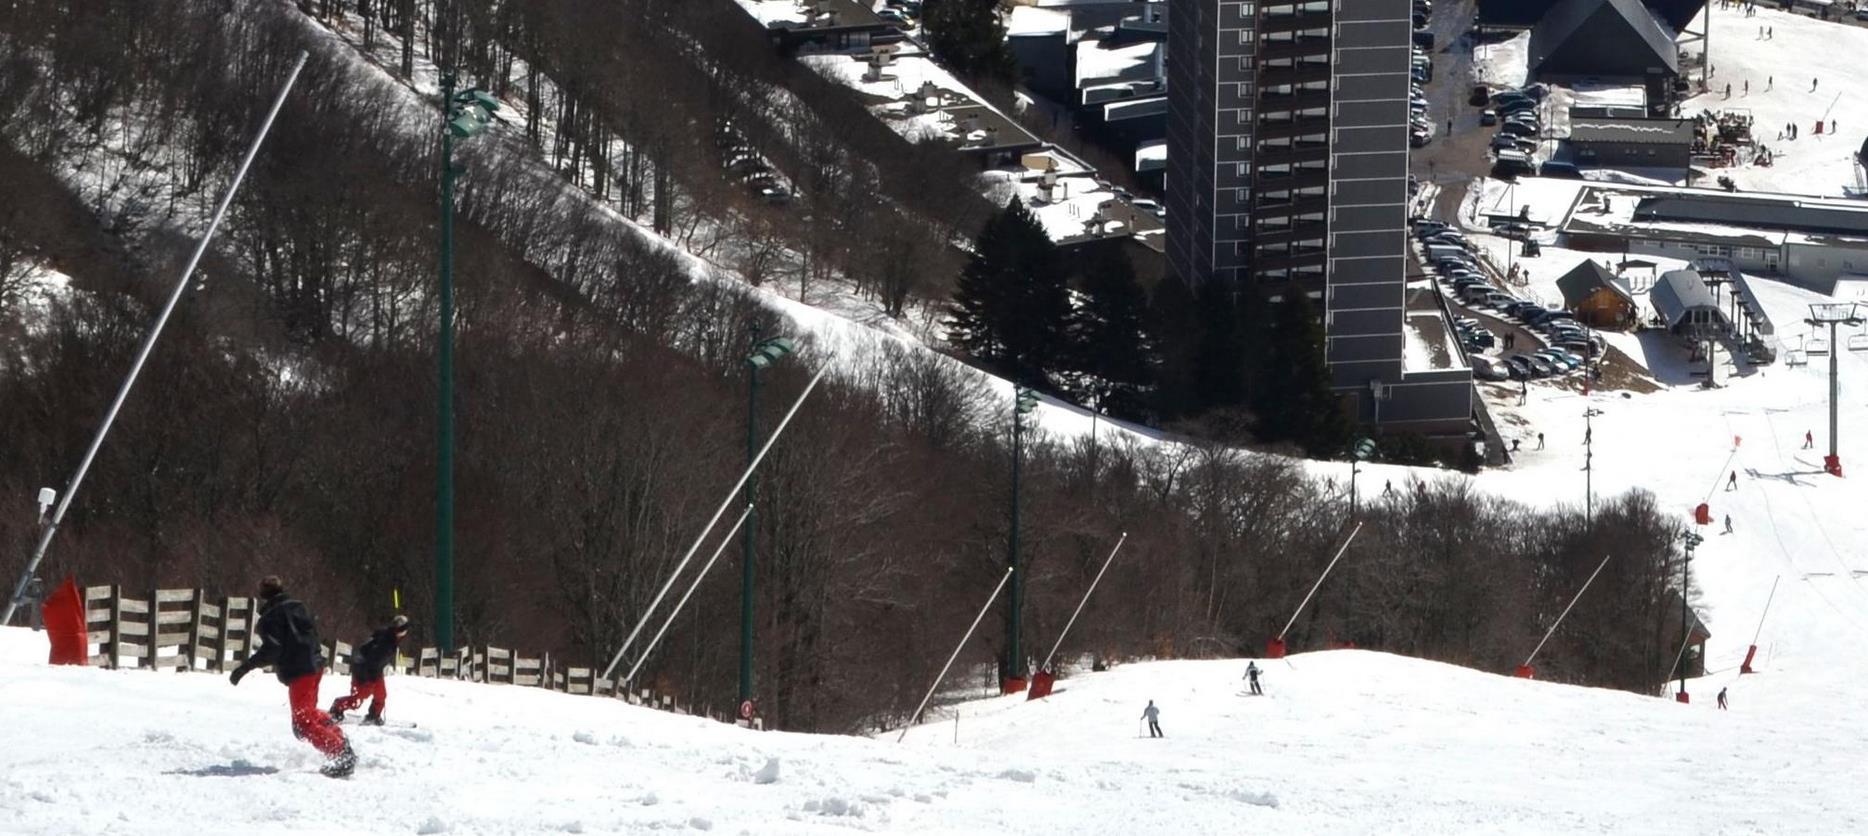 Super Besse - Ski slopes - downhill